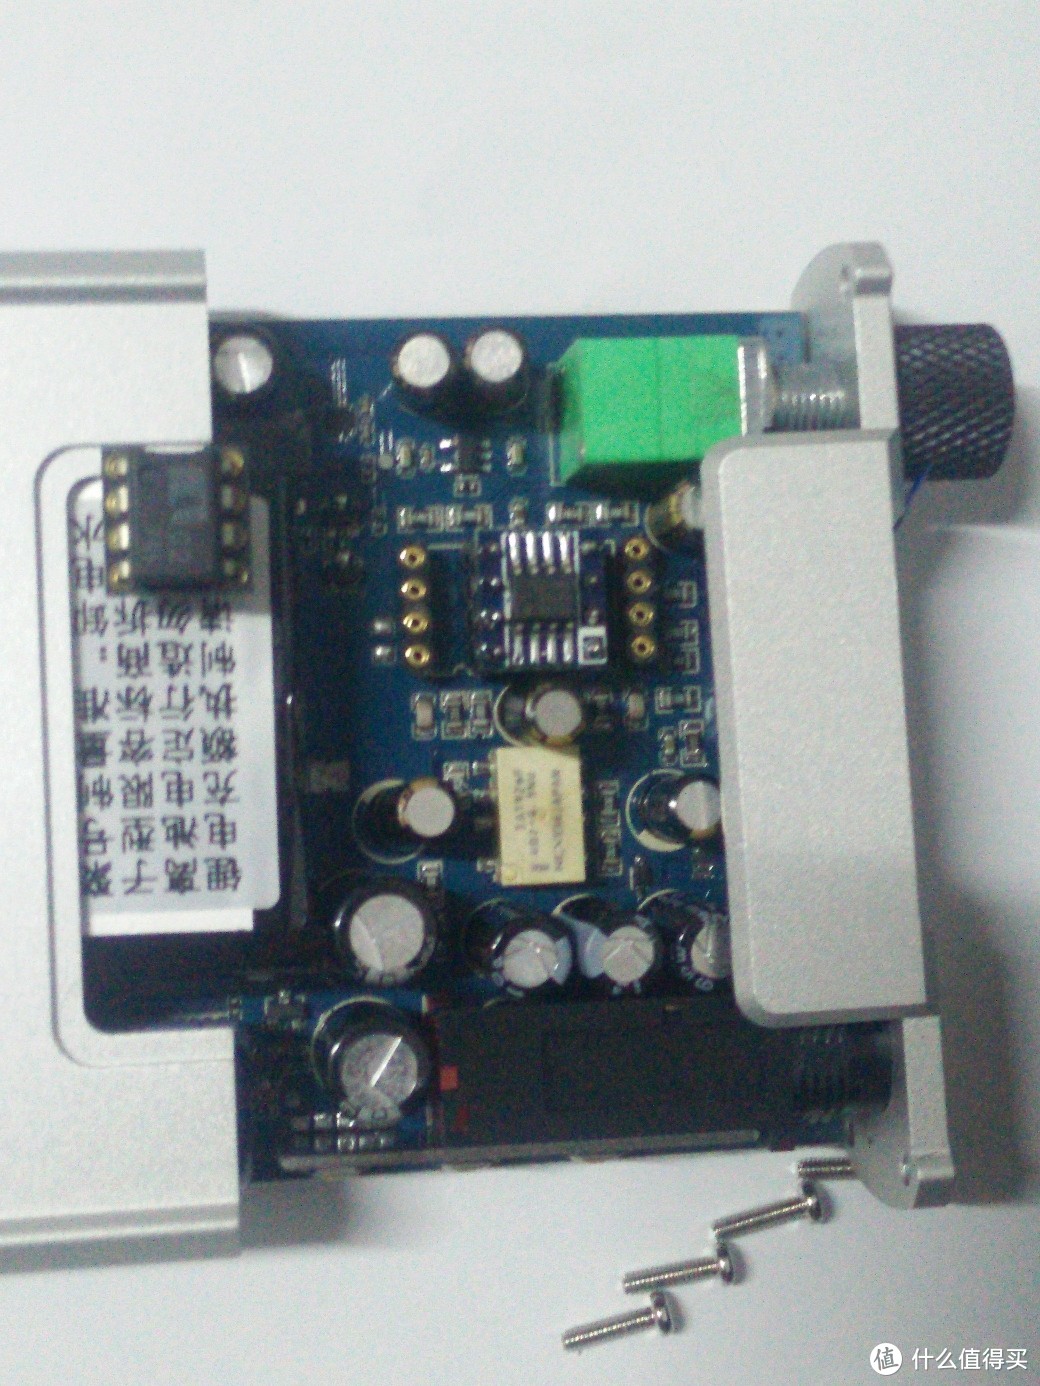 属于爱折腾党的便携式耳放解码一体机XD05Plus+fd02的使用感受